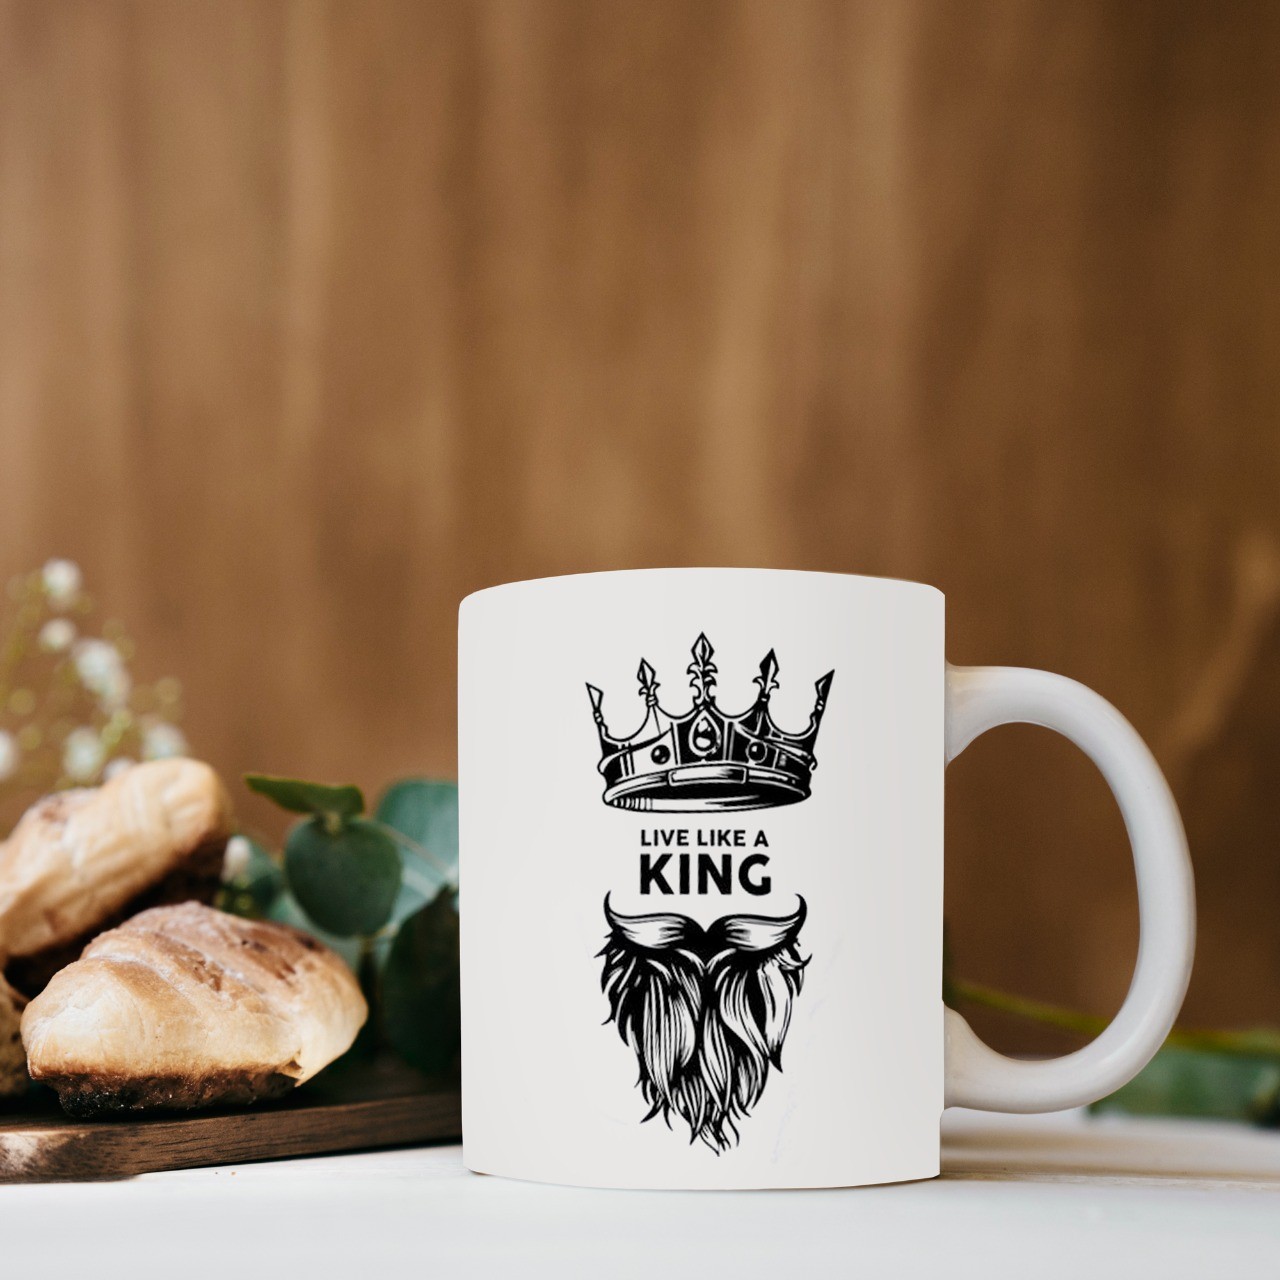 King mug